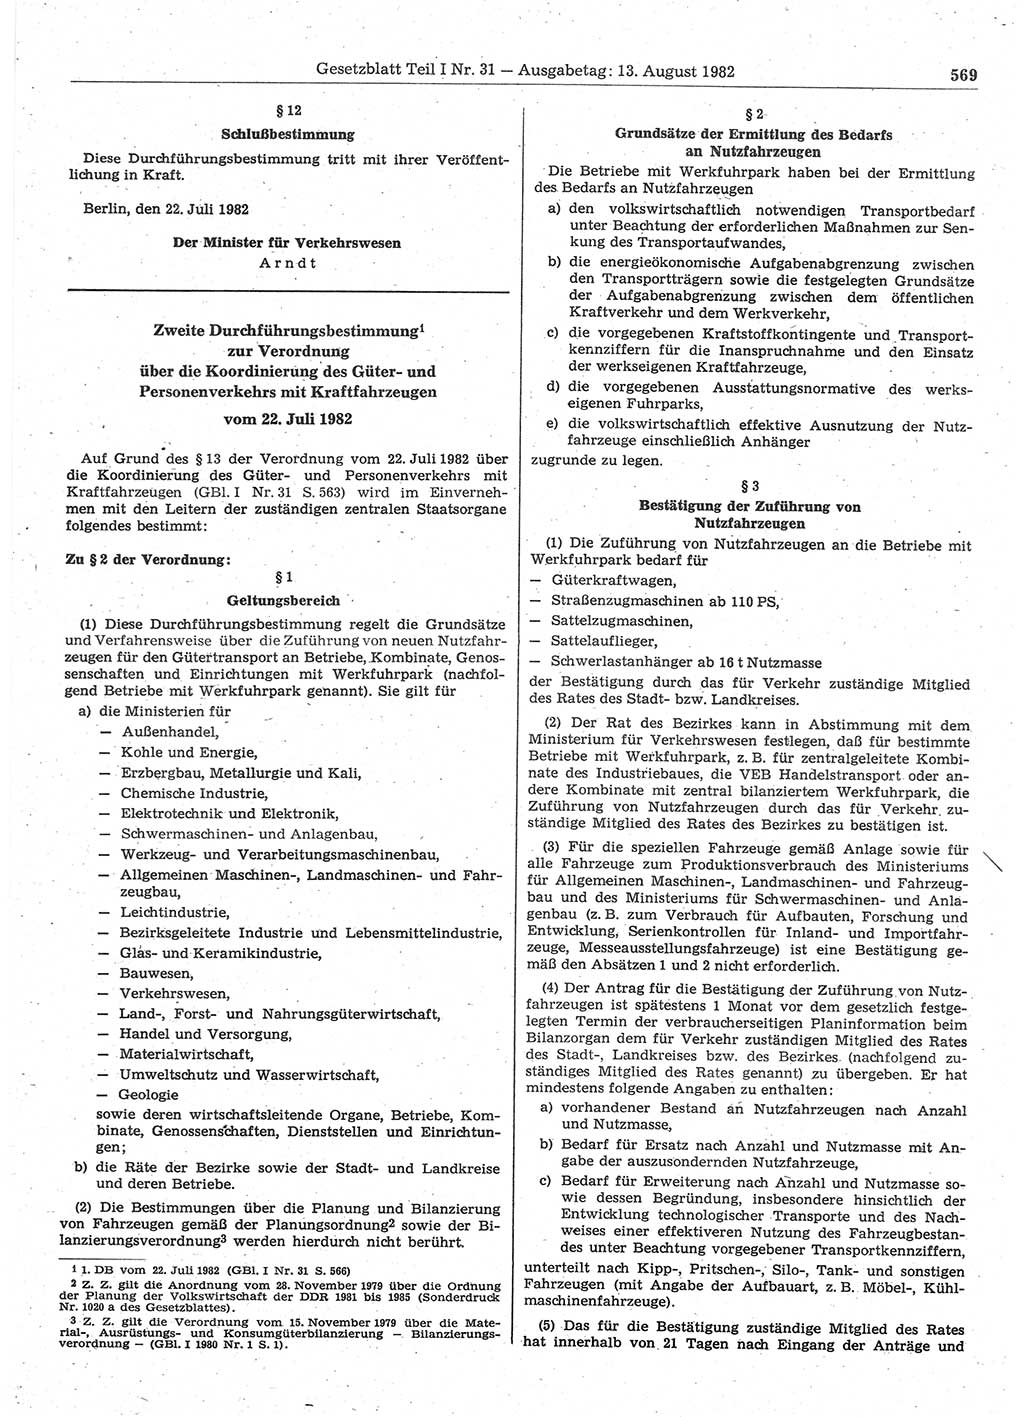 Gesetzblatt (GBl.) der Deutschen Demokratischen Republik (DDR) Teil Ⅰ 1982, Seite 569 (GBl. DDR Ⅰ 1982, S. 569)